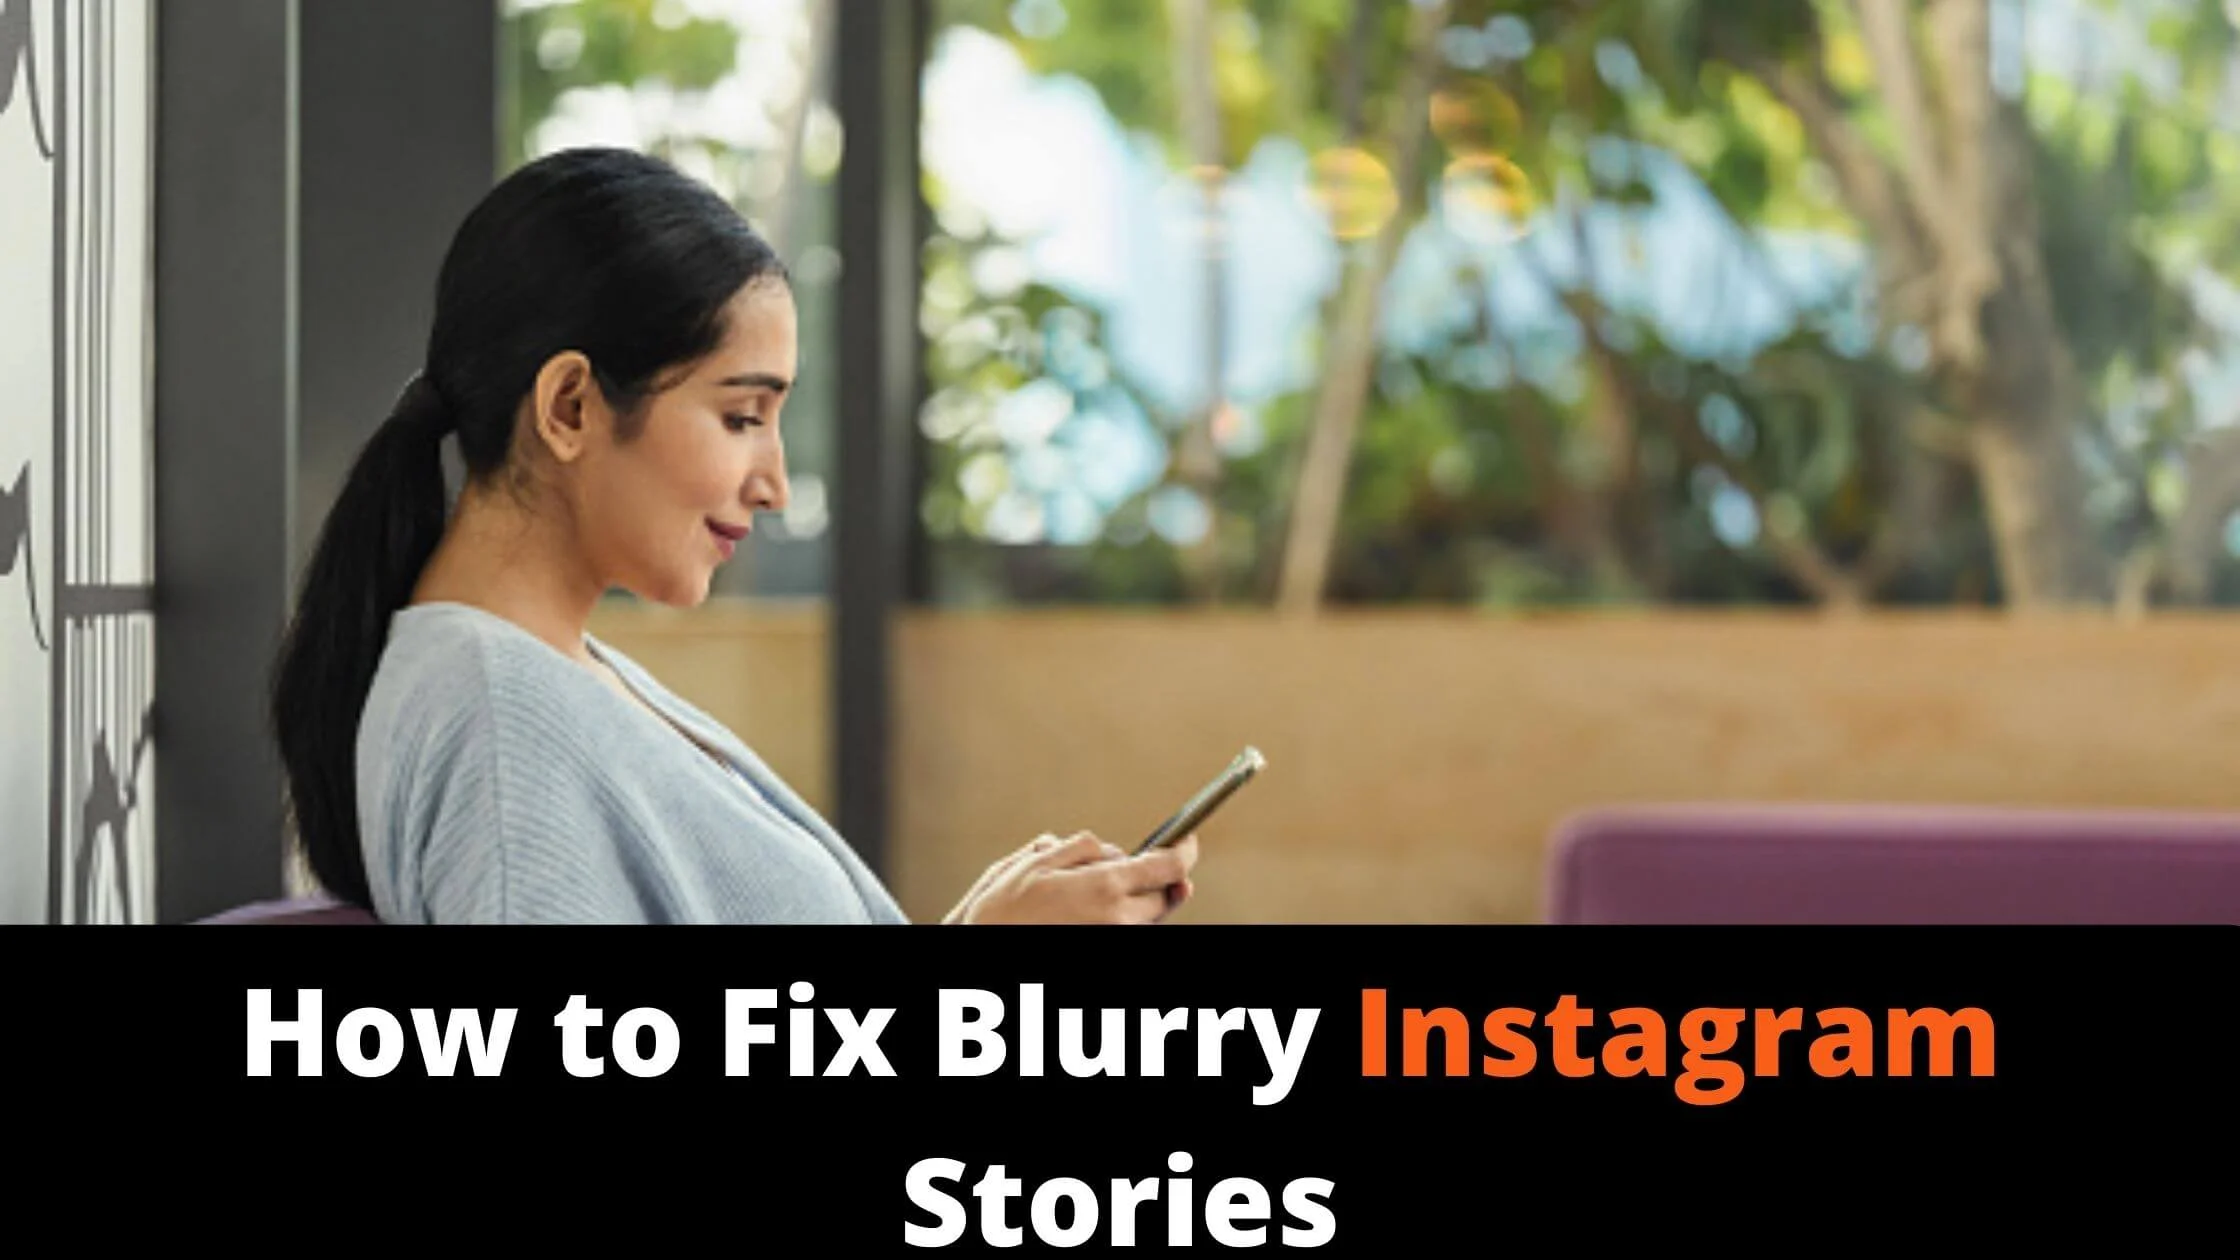 Blurry Instagram Stories